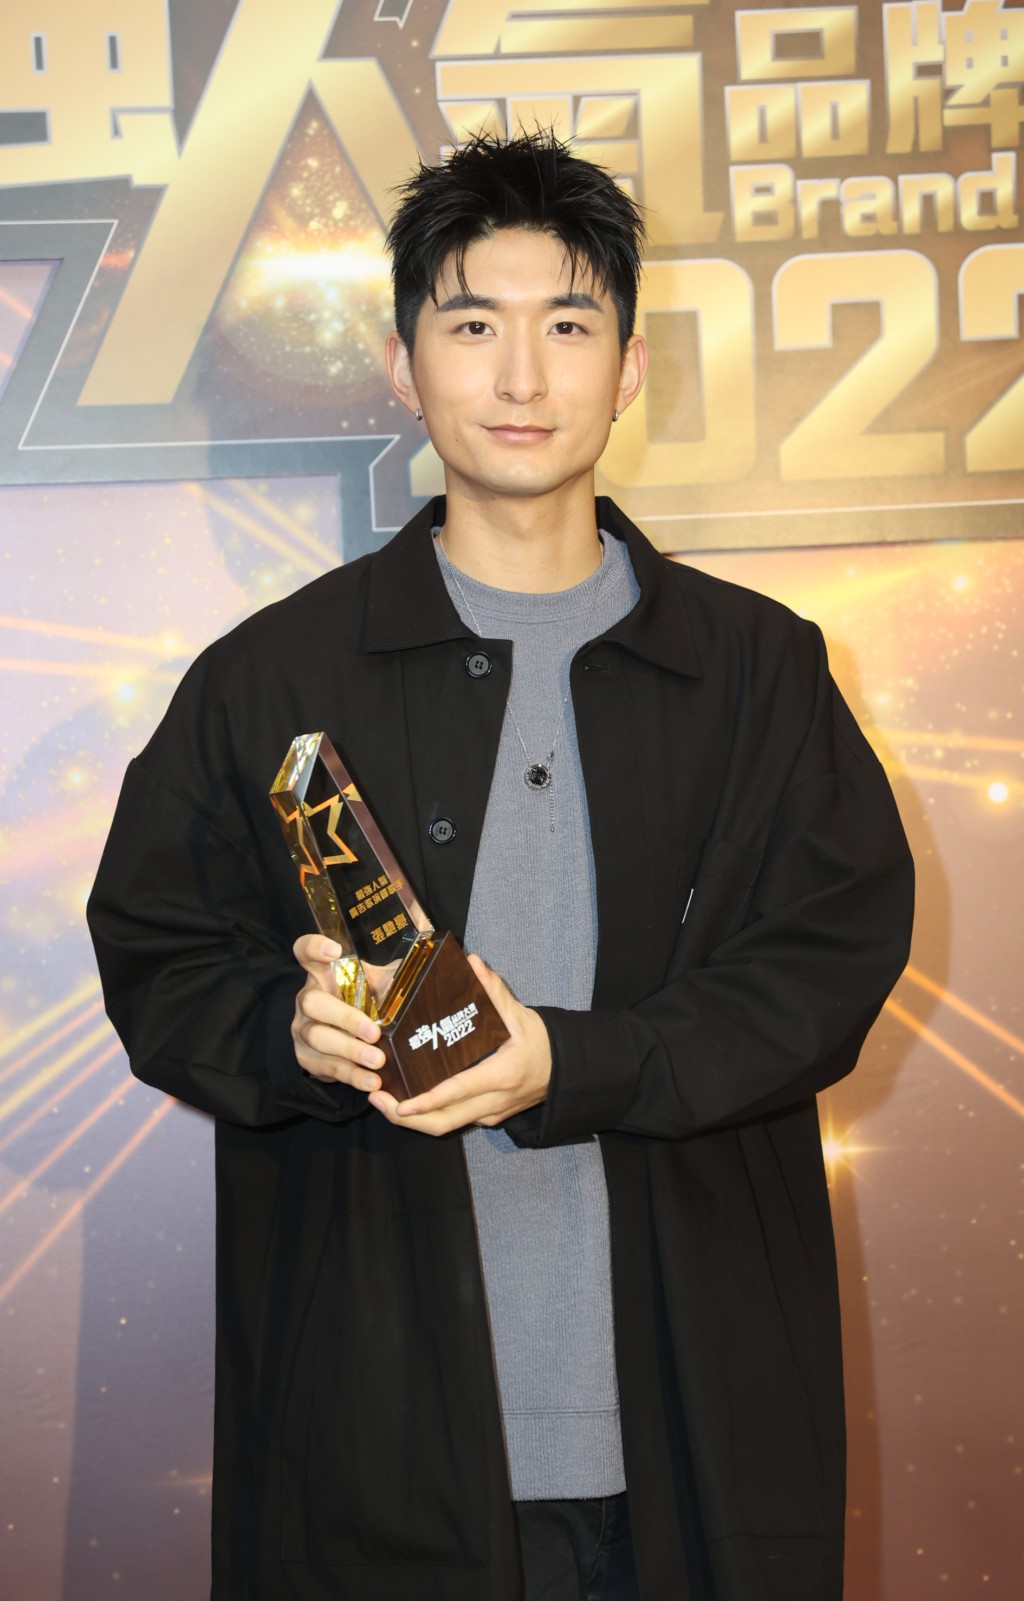 张驰豪获「最强人气广告歌演绎歌星奖」。